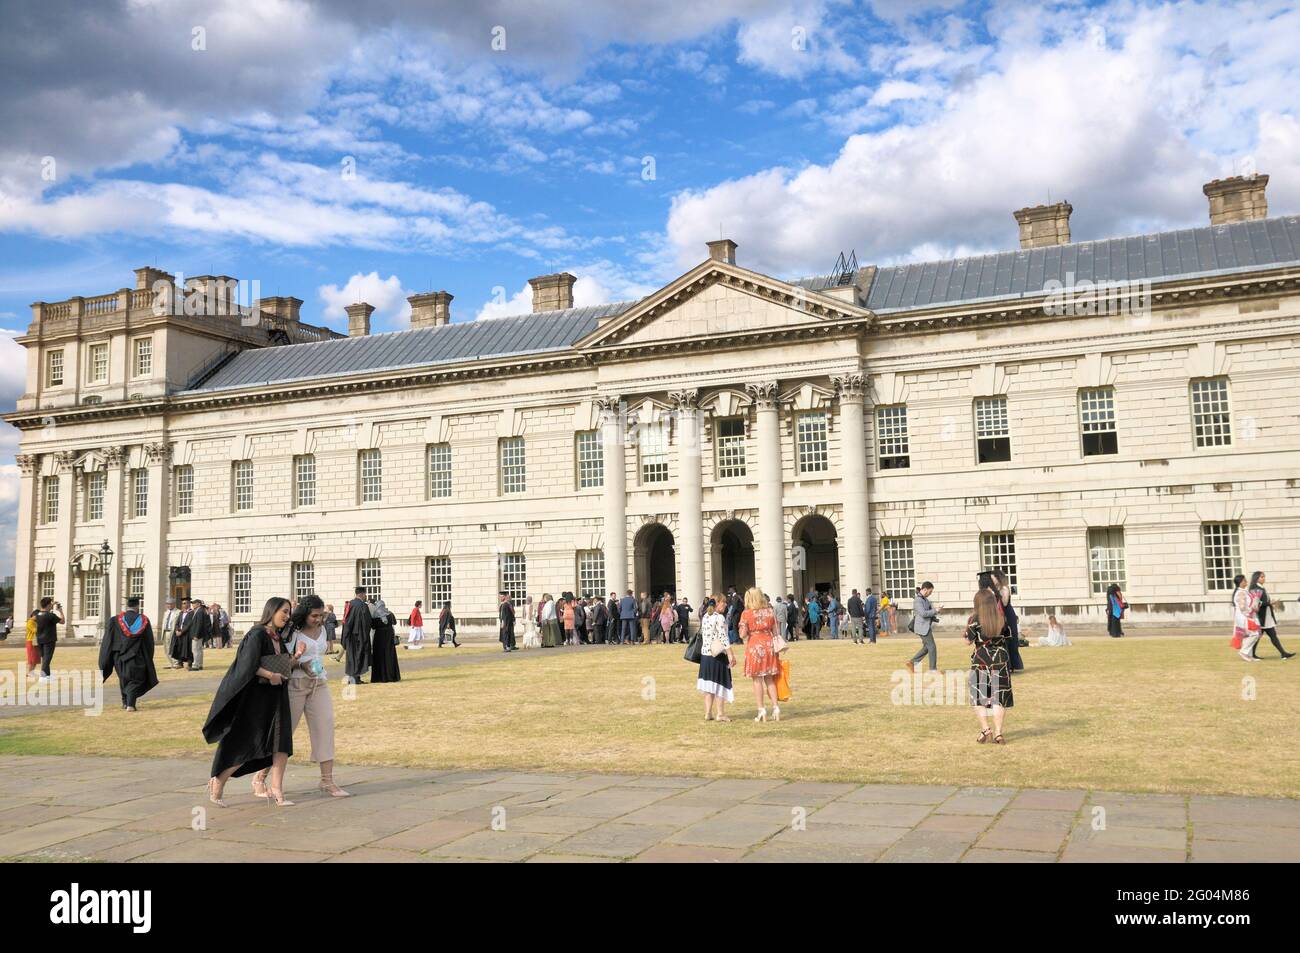 Étudiants, parents et familles le jour de la remise des diplômes à l'Université de Greenwich, sur le terrain du Old Royal Naval College, Londres, Angleterre, Royaume-Uni Banque D'Images